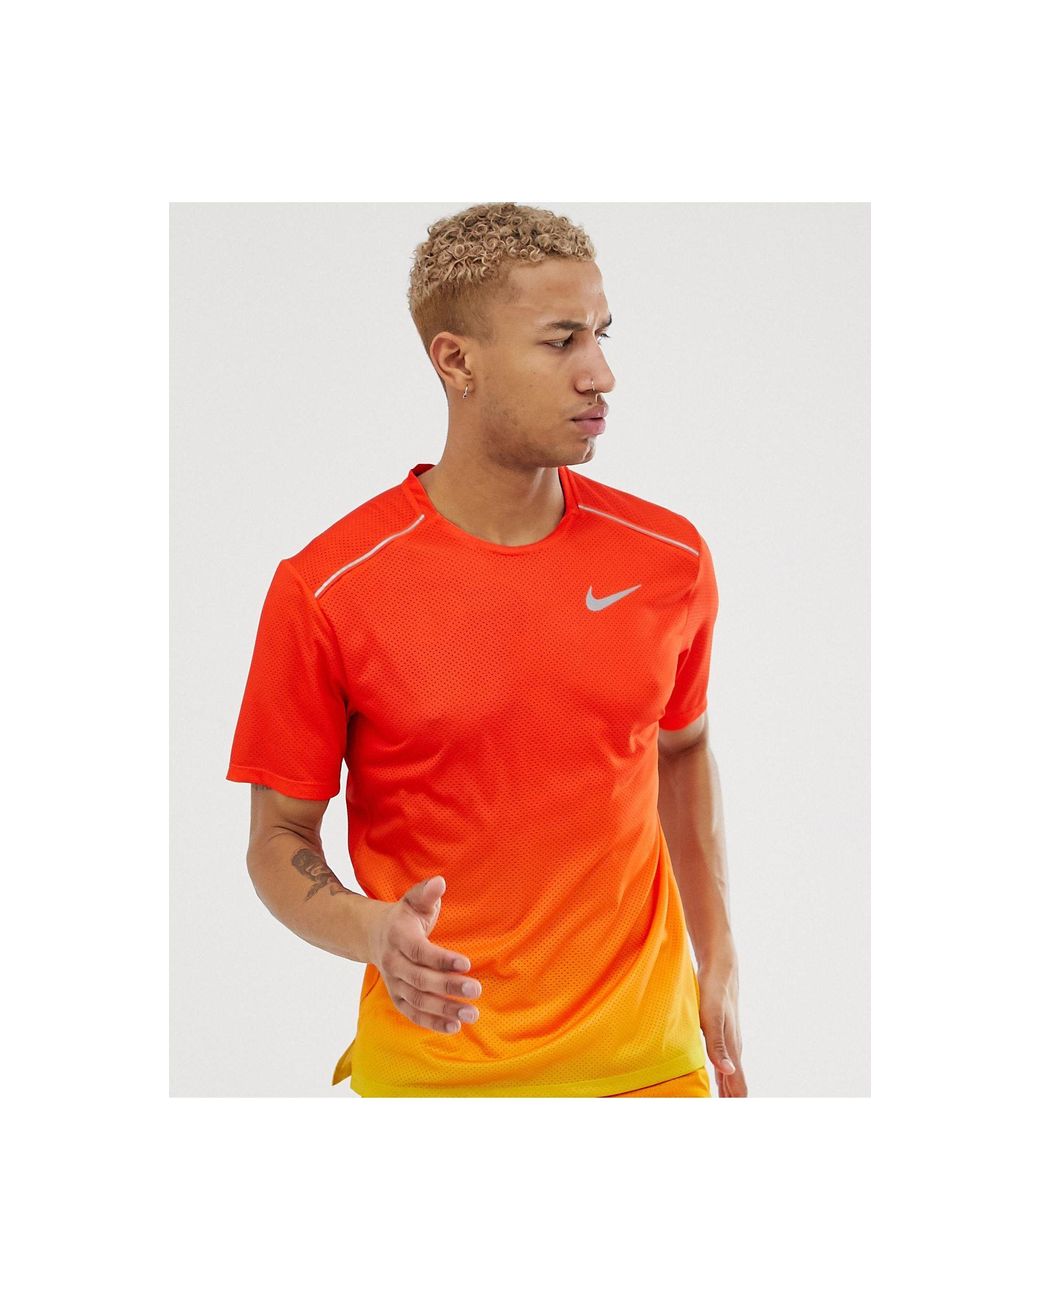 Nike Dry Miler T-shirt in Orange/Lime (Orange) for Men | Lyst